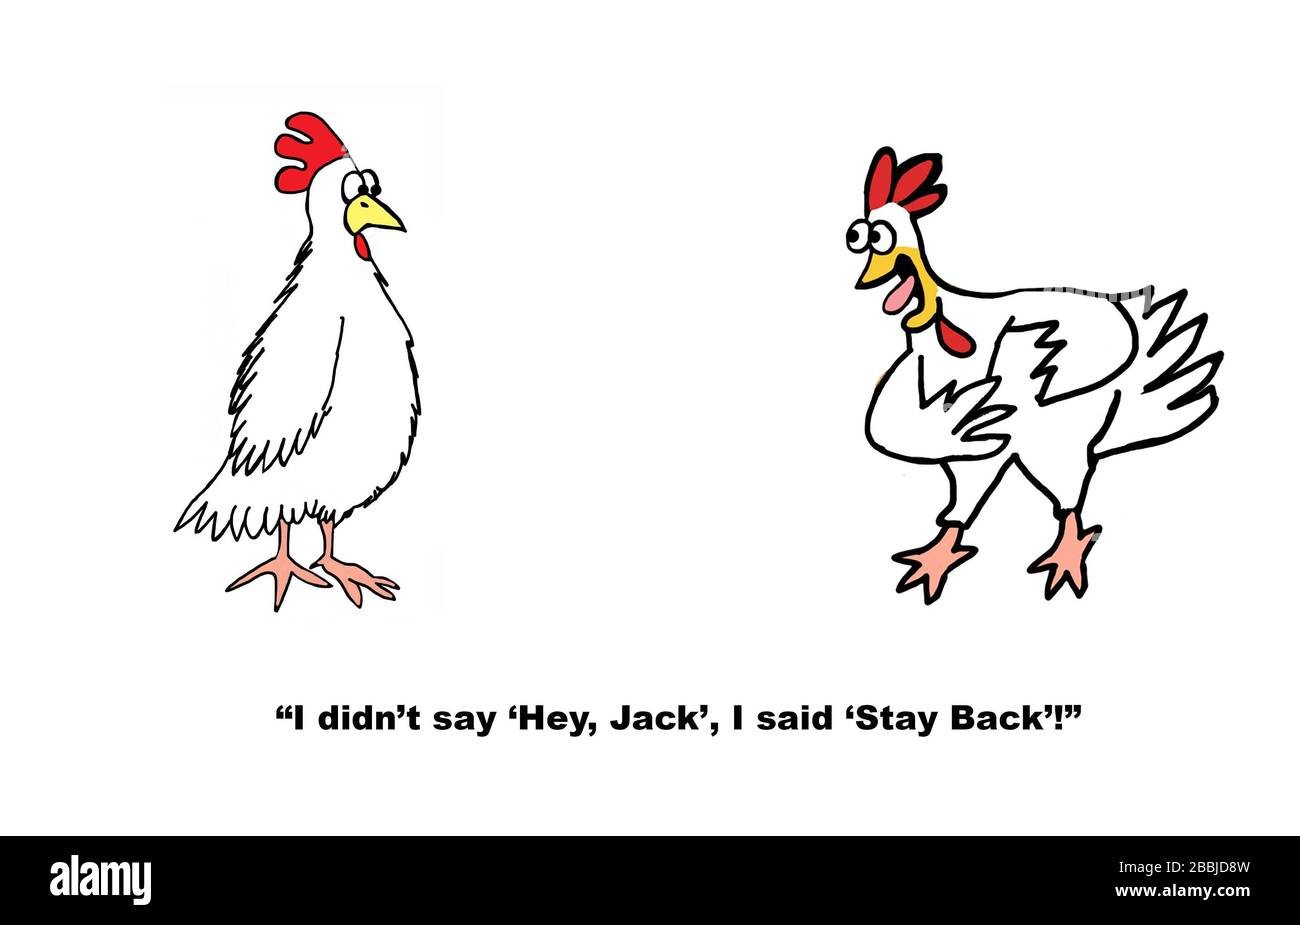 Farb-Cartoon von zwei Hühnern, die soziale Distanzierung und ihre Bedeutung darstellen. Stockfoto